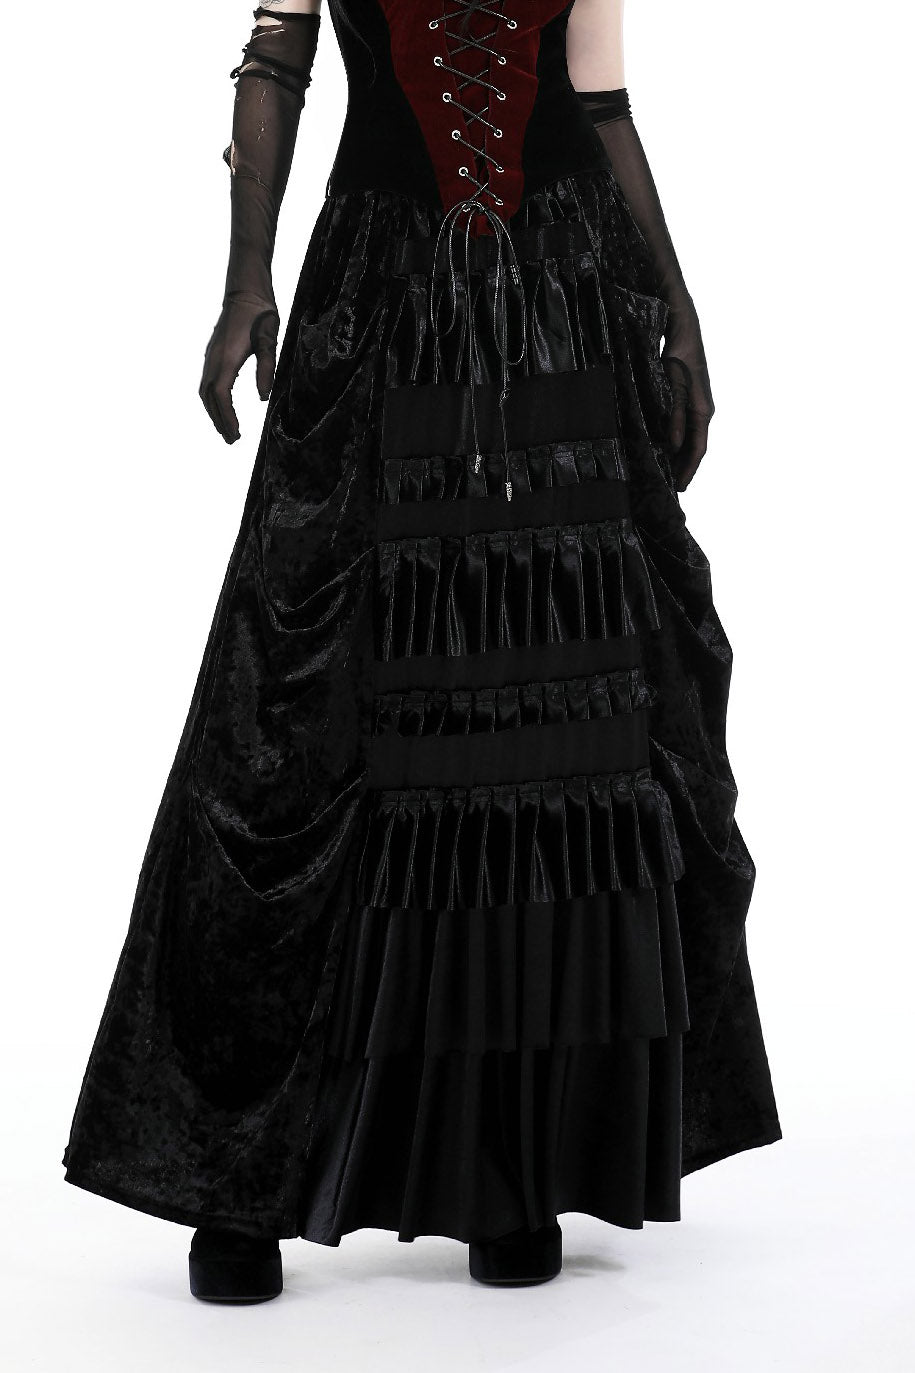 ruffled gothic skirt